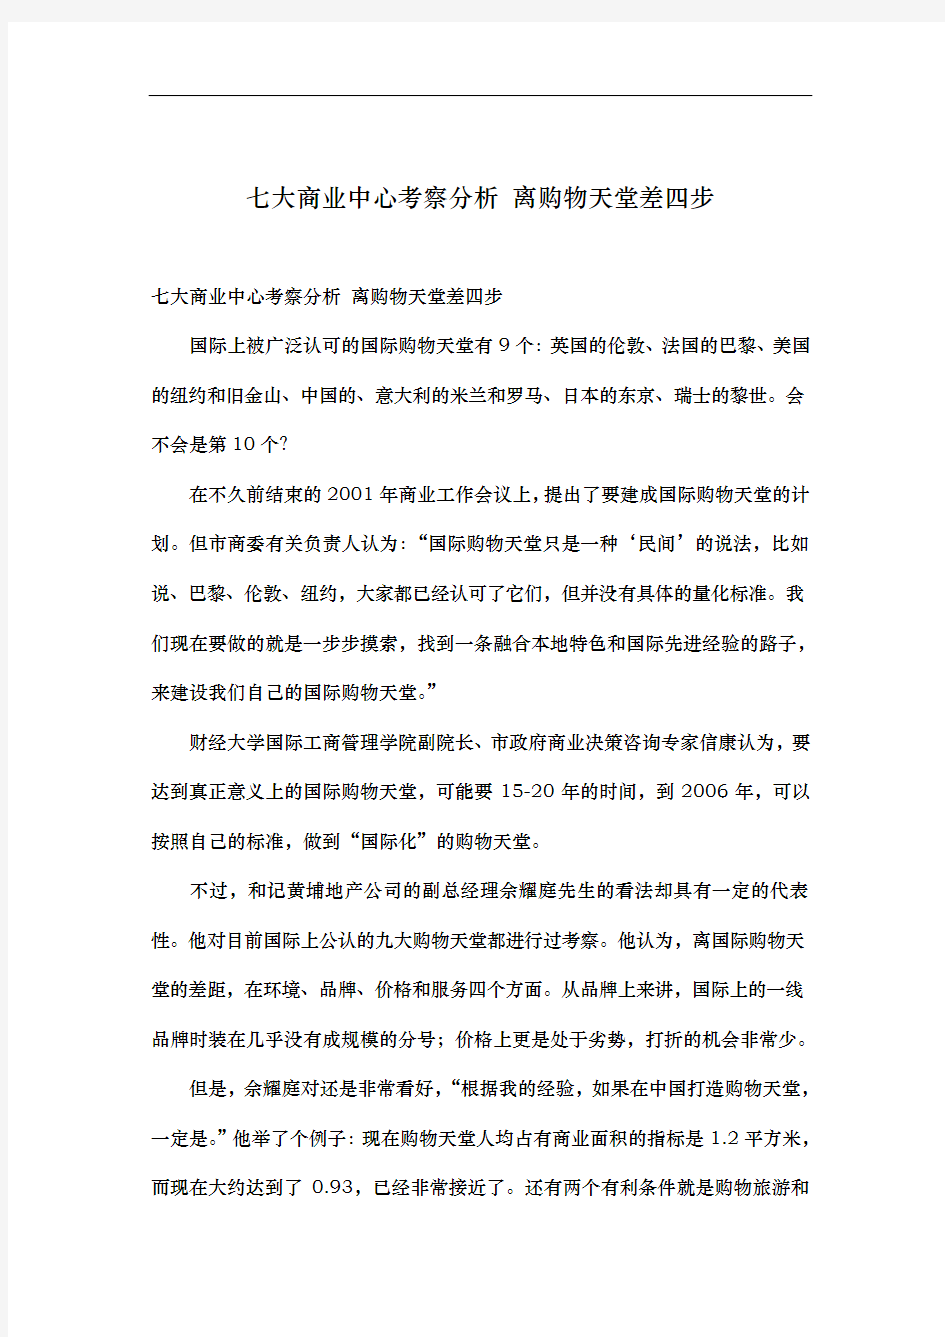 上海七大商业中心的考察分析报告